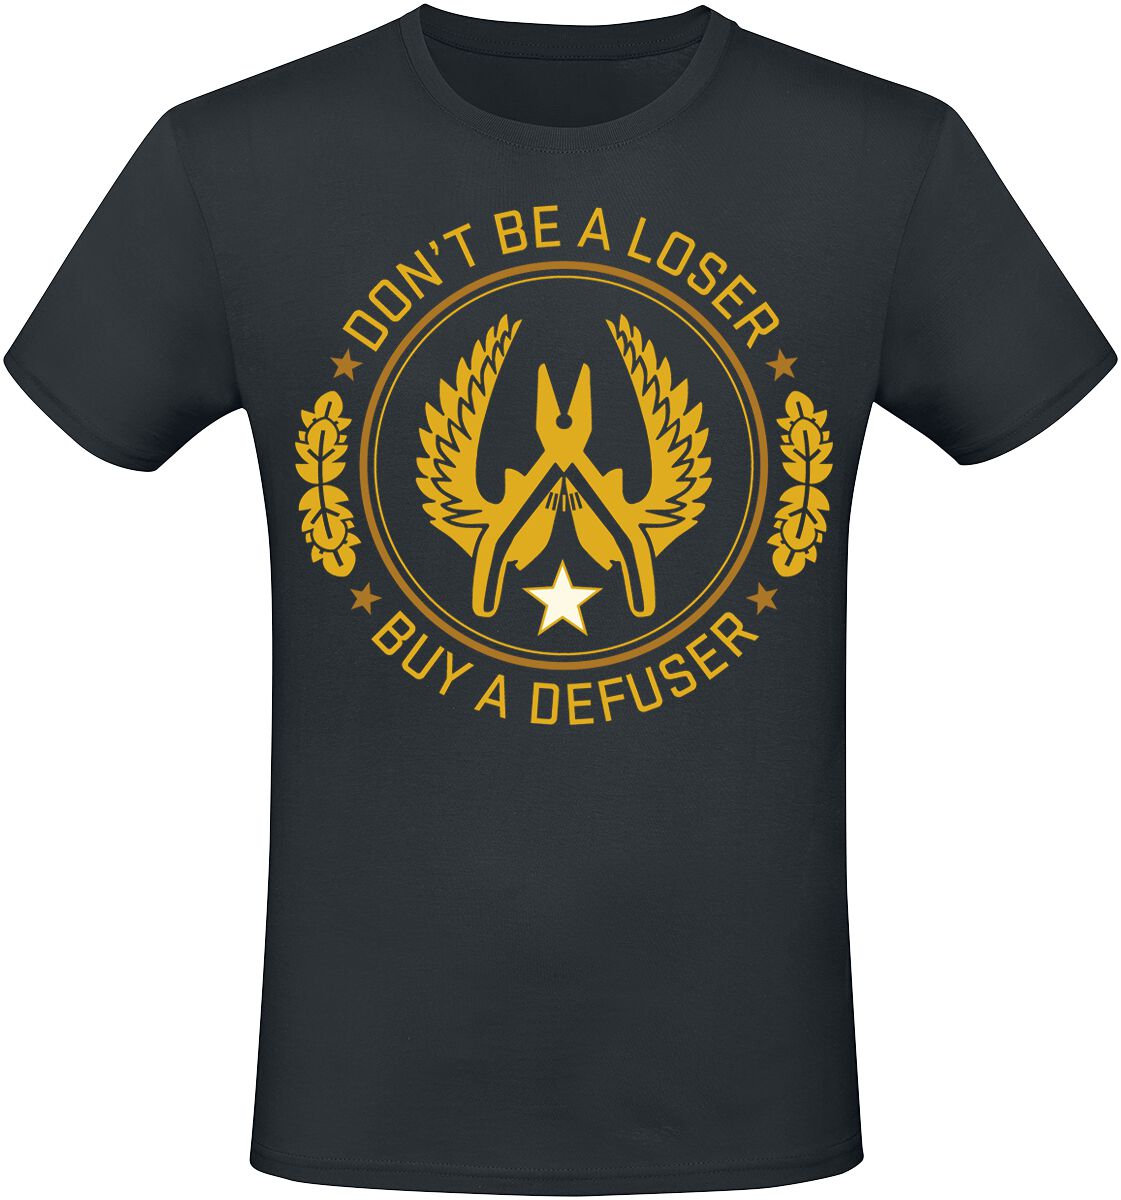 Counter-Strike - Gaming T-Shirt - 2 - Defuser - S bis XXL - für Männer - Größe XXL - schwarz  - EMP exklusives Merchandise!